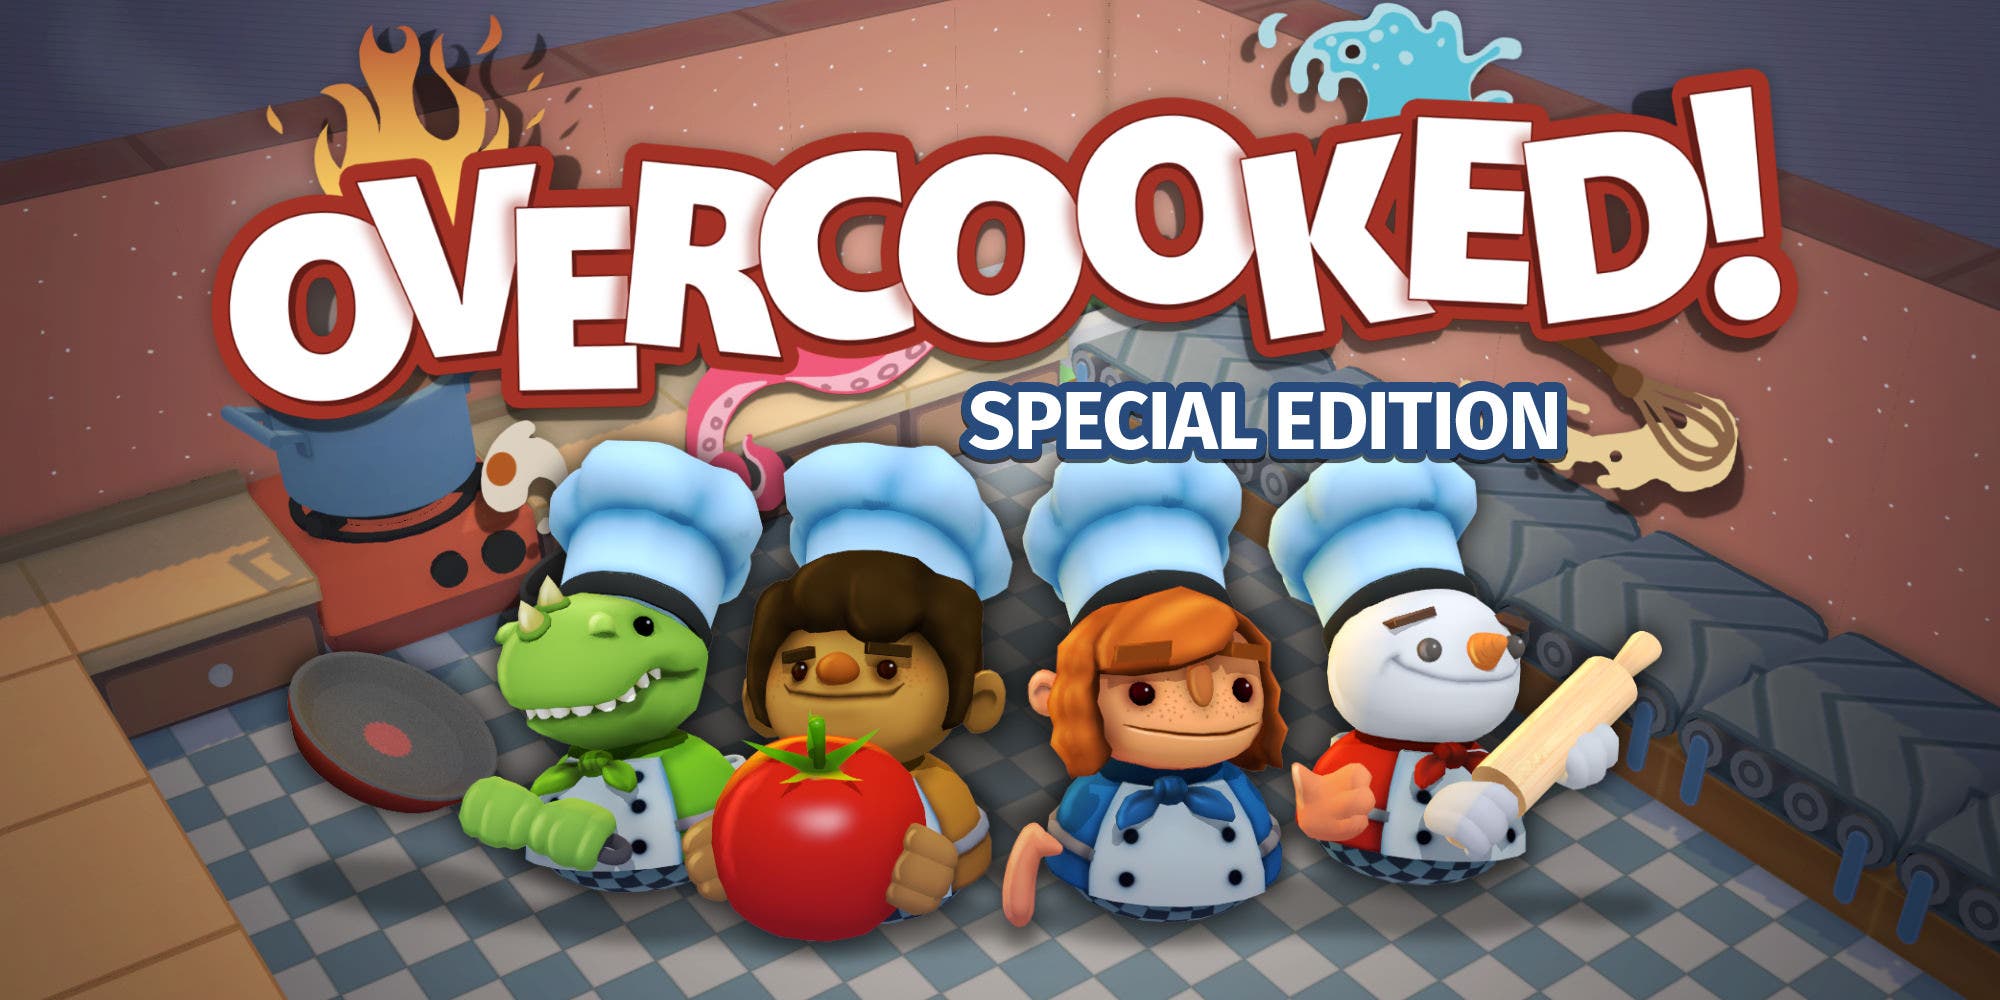 Overcooked: Special Edition ha recibido una actualización que lleva el juego a la versión 1.0.1